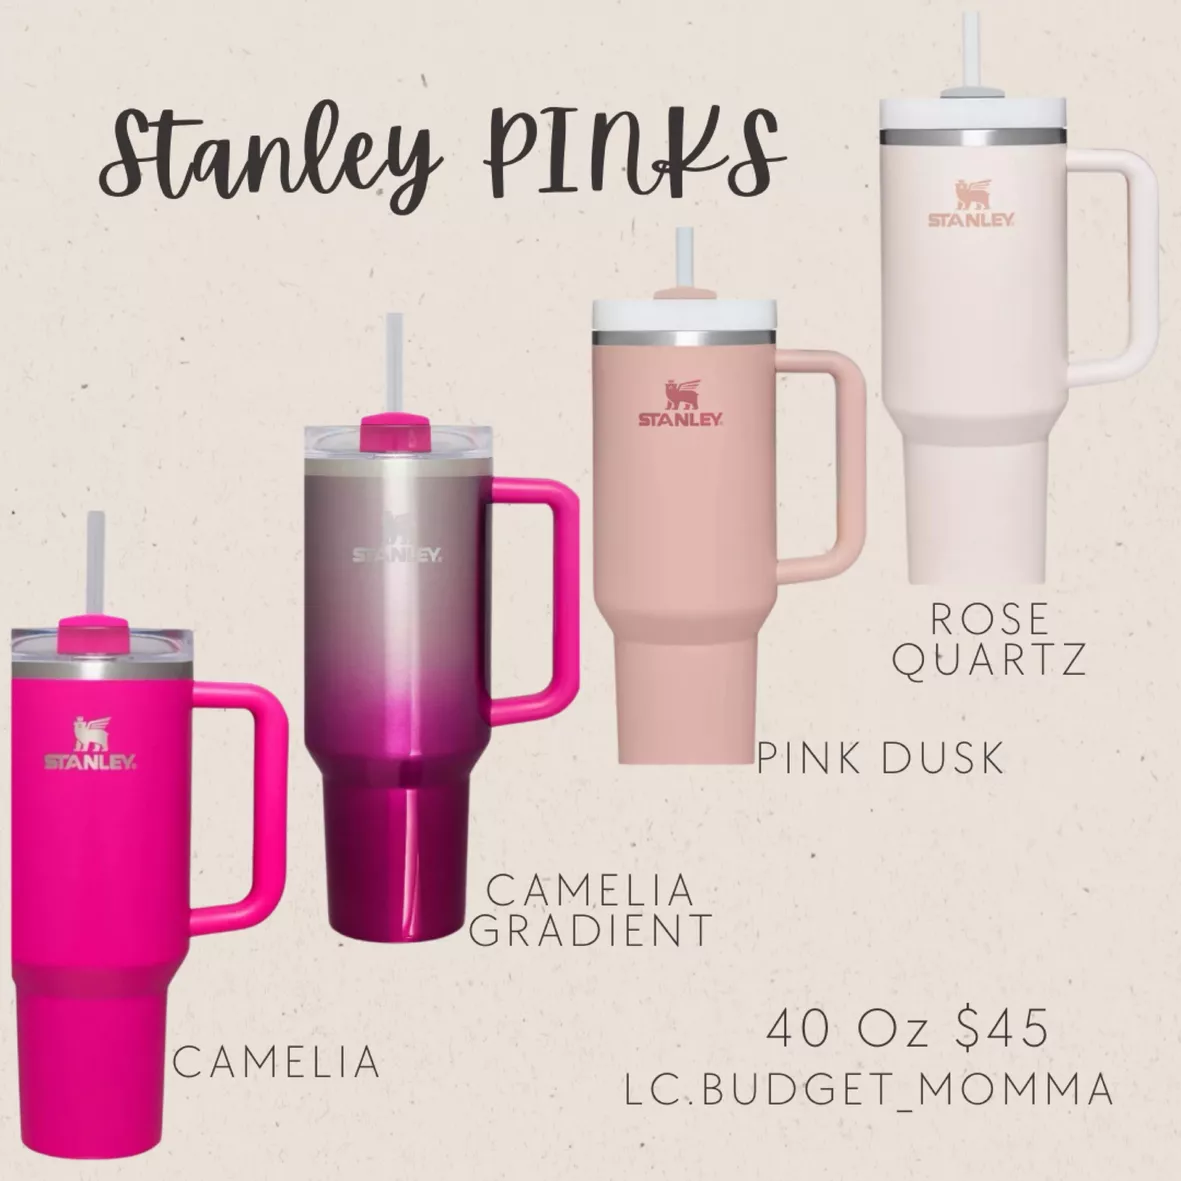 Stanley 40 oz Pink Dusk